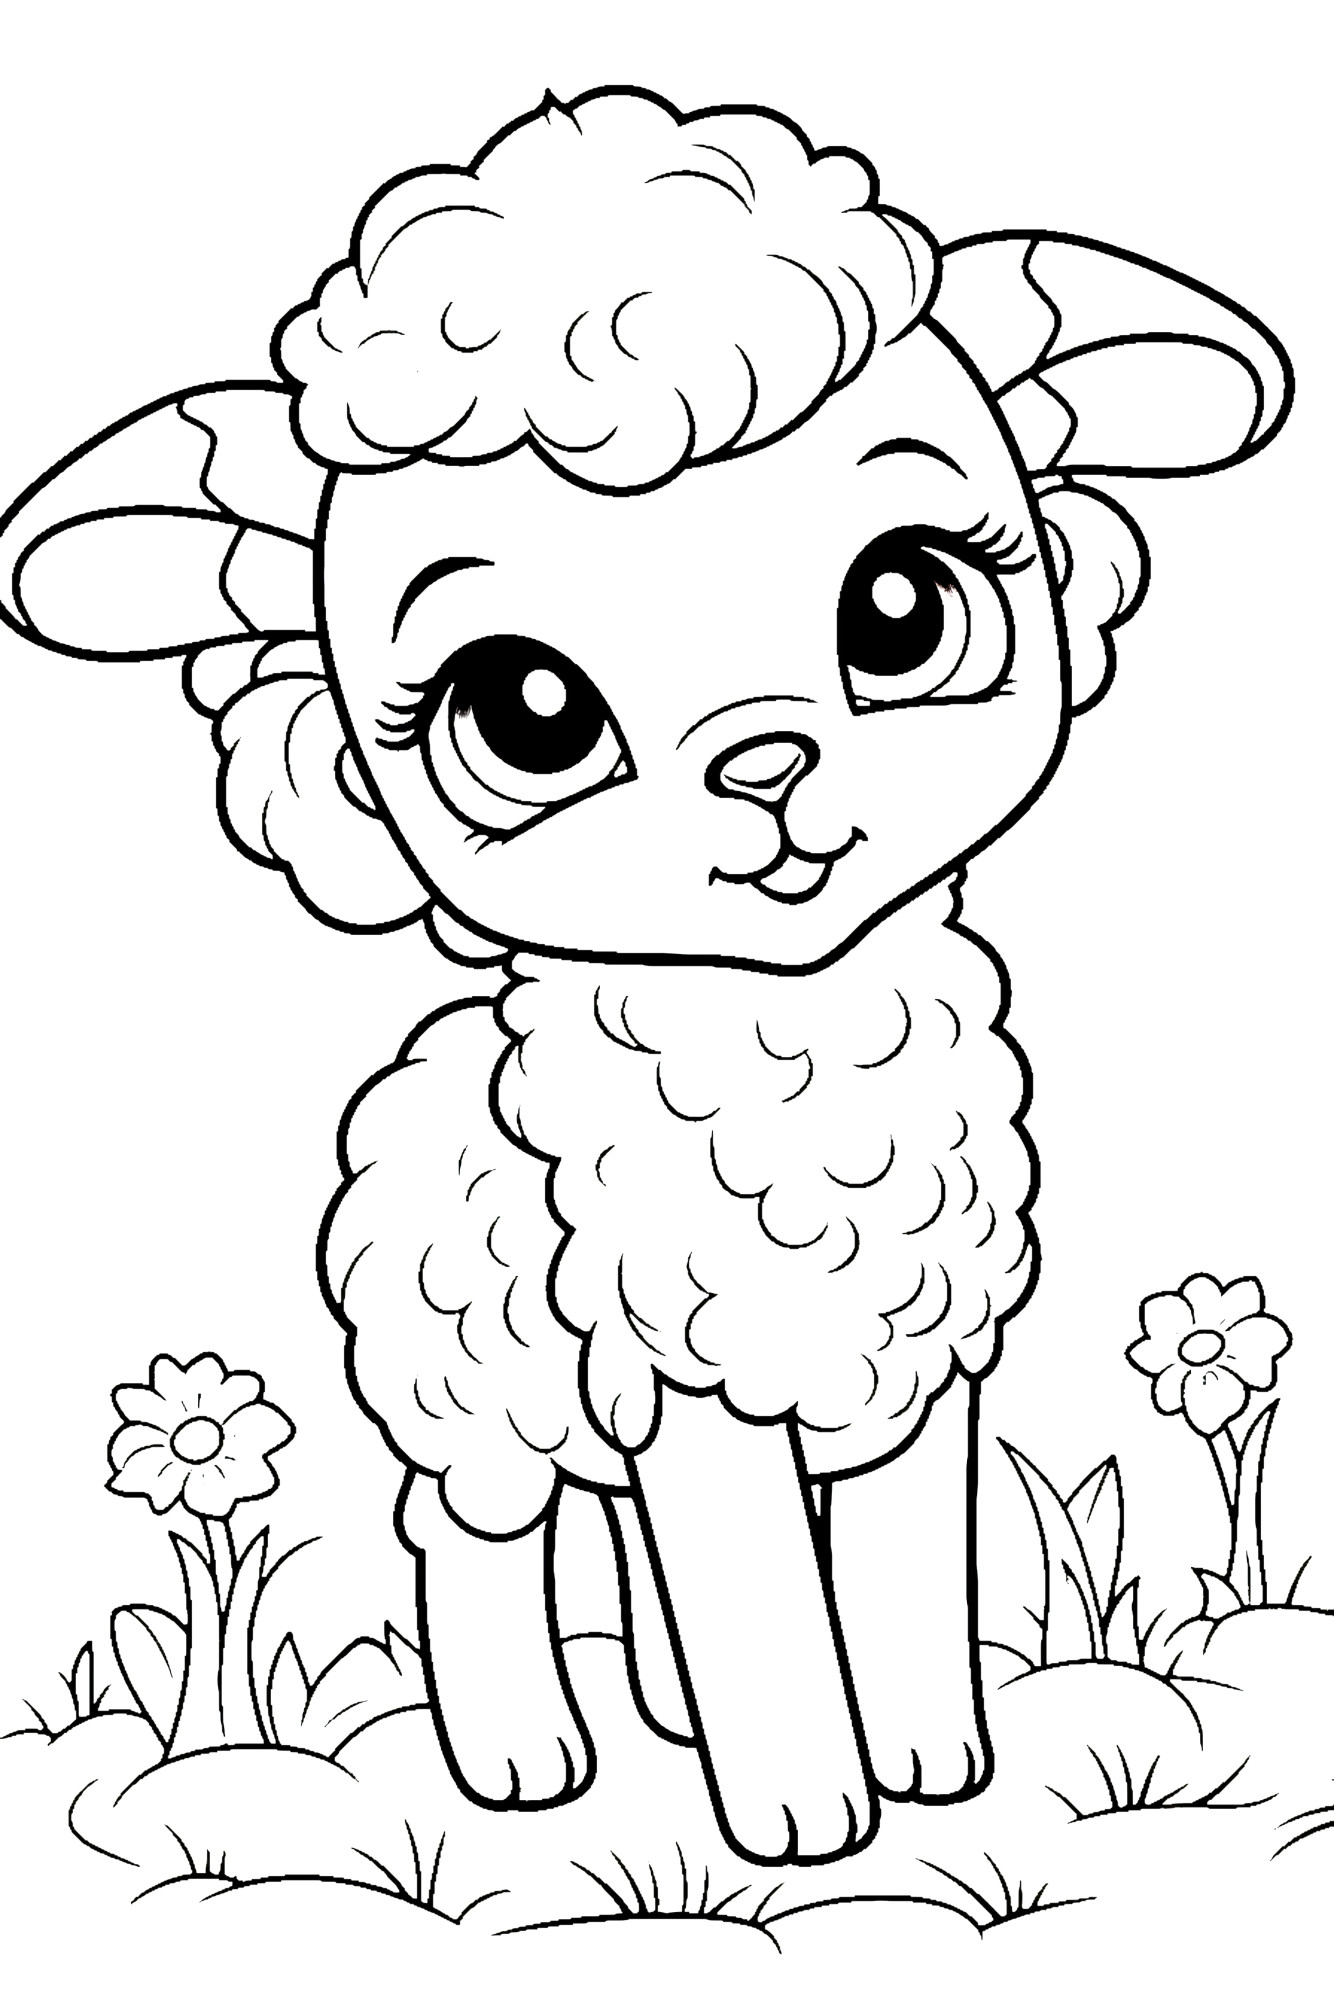 Раскраска для детей: милая овечка с полевыми цветами